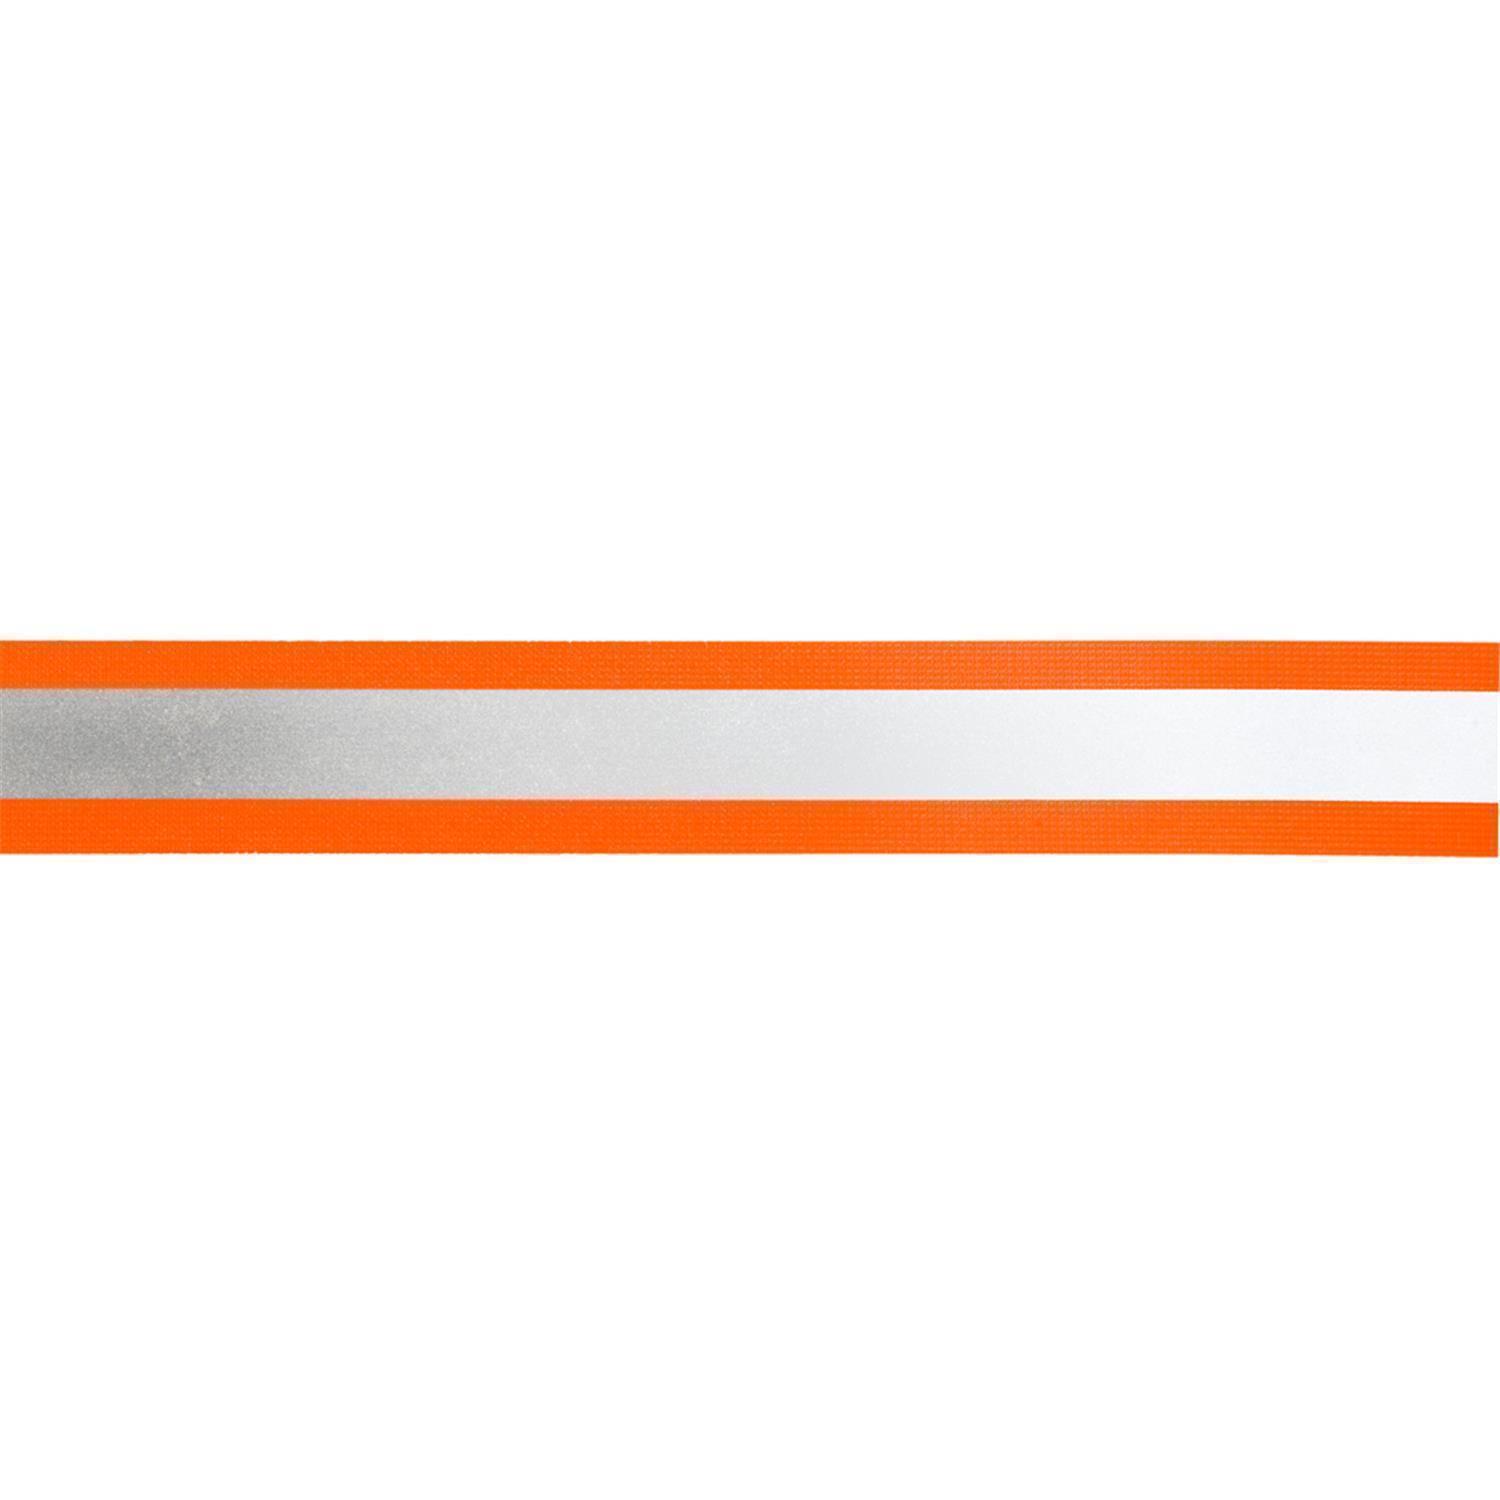 Reflektorband 50mm breit in 2 Farben orange-silber 10 Meter